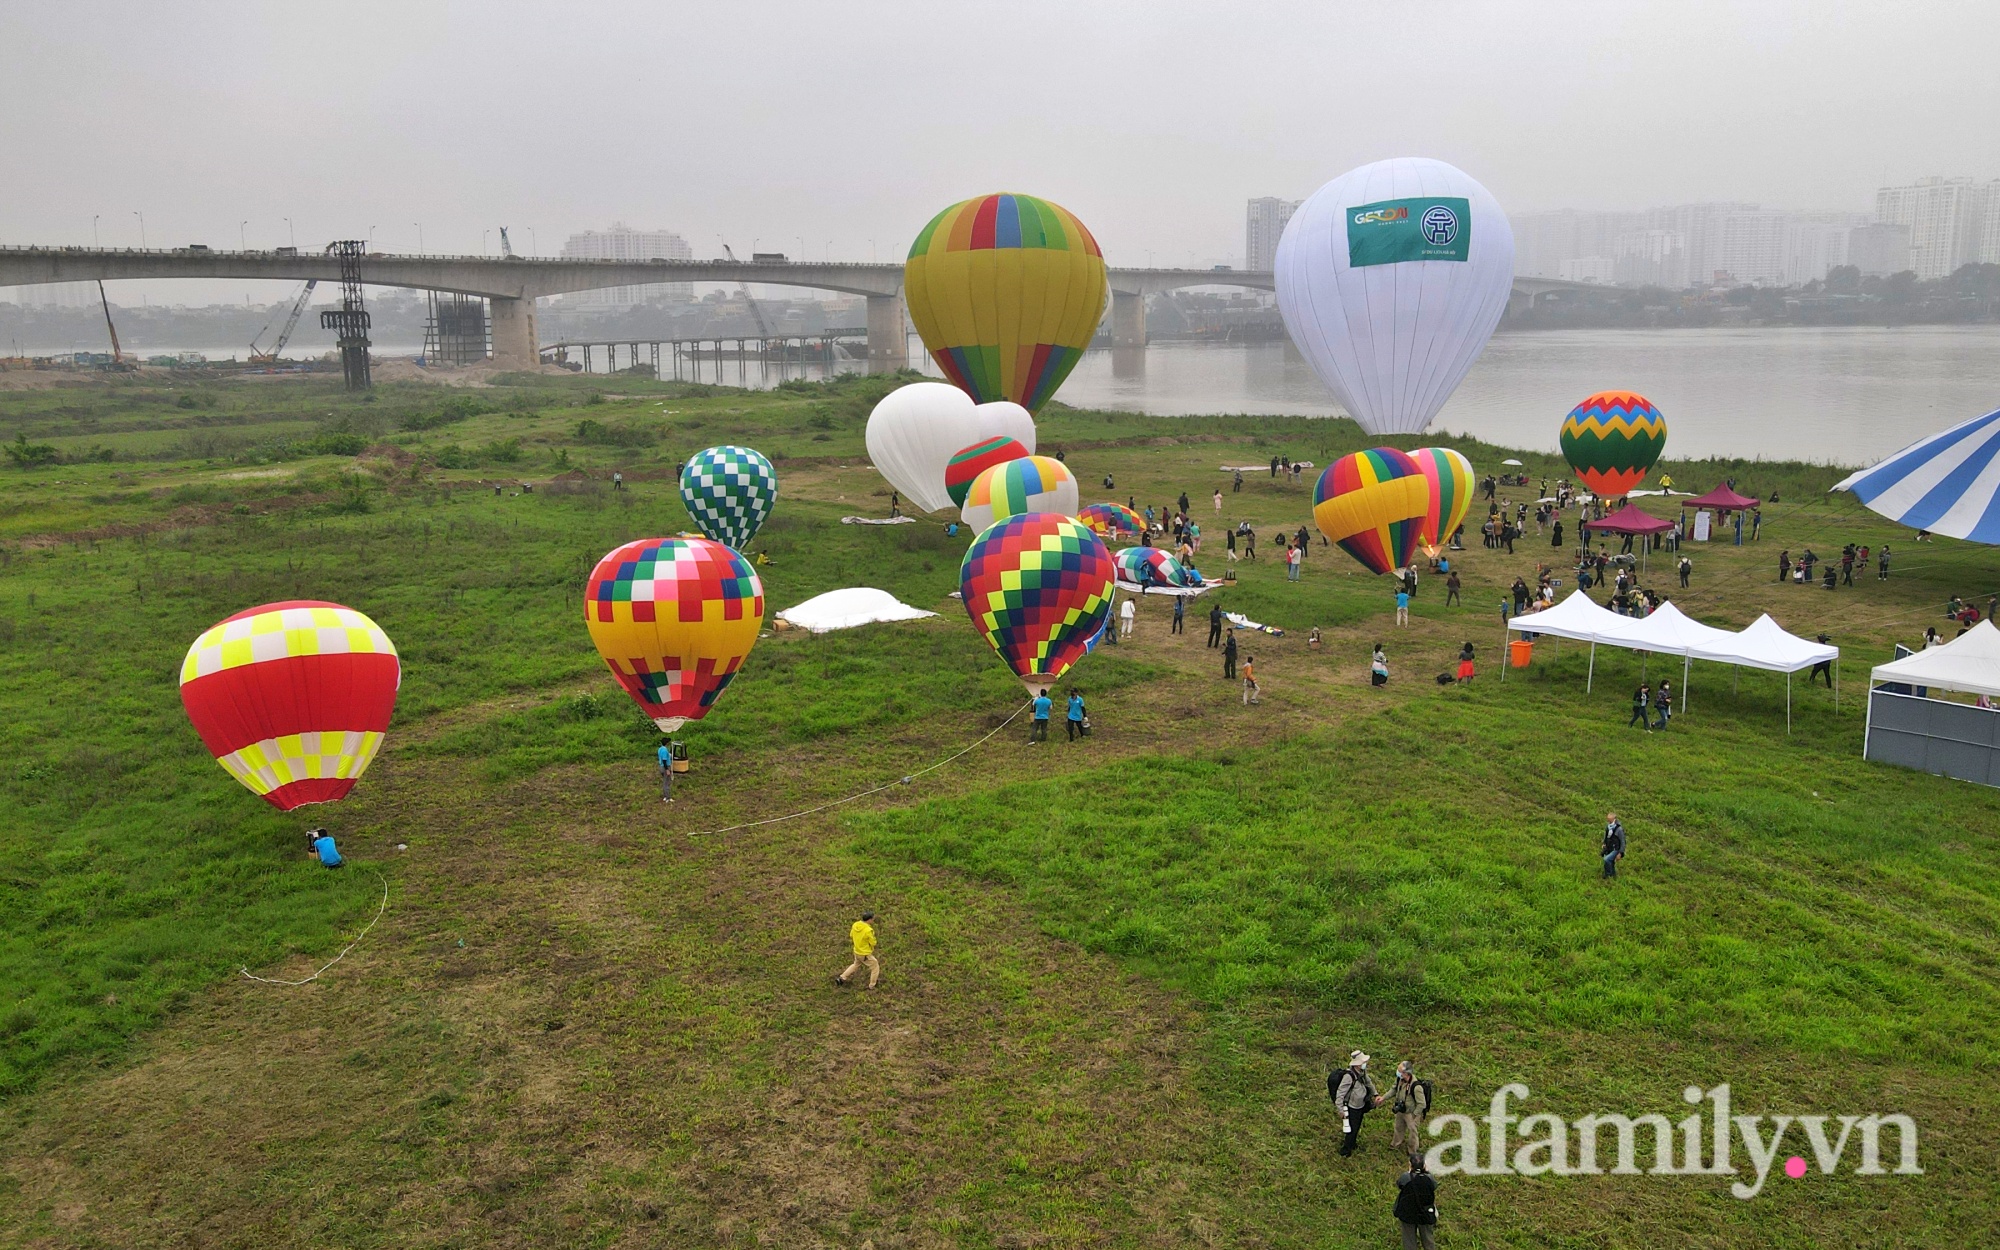 Lần đầu tiên tổ chức Ngày hội khinh khí cầu tại Hà Nội: Nhanh chân đến để trải nghiệm khoảnh khắc hiếm có ngắm thành phố từ trên cao - Ảnh 15.